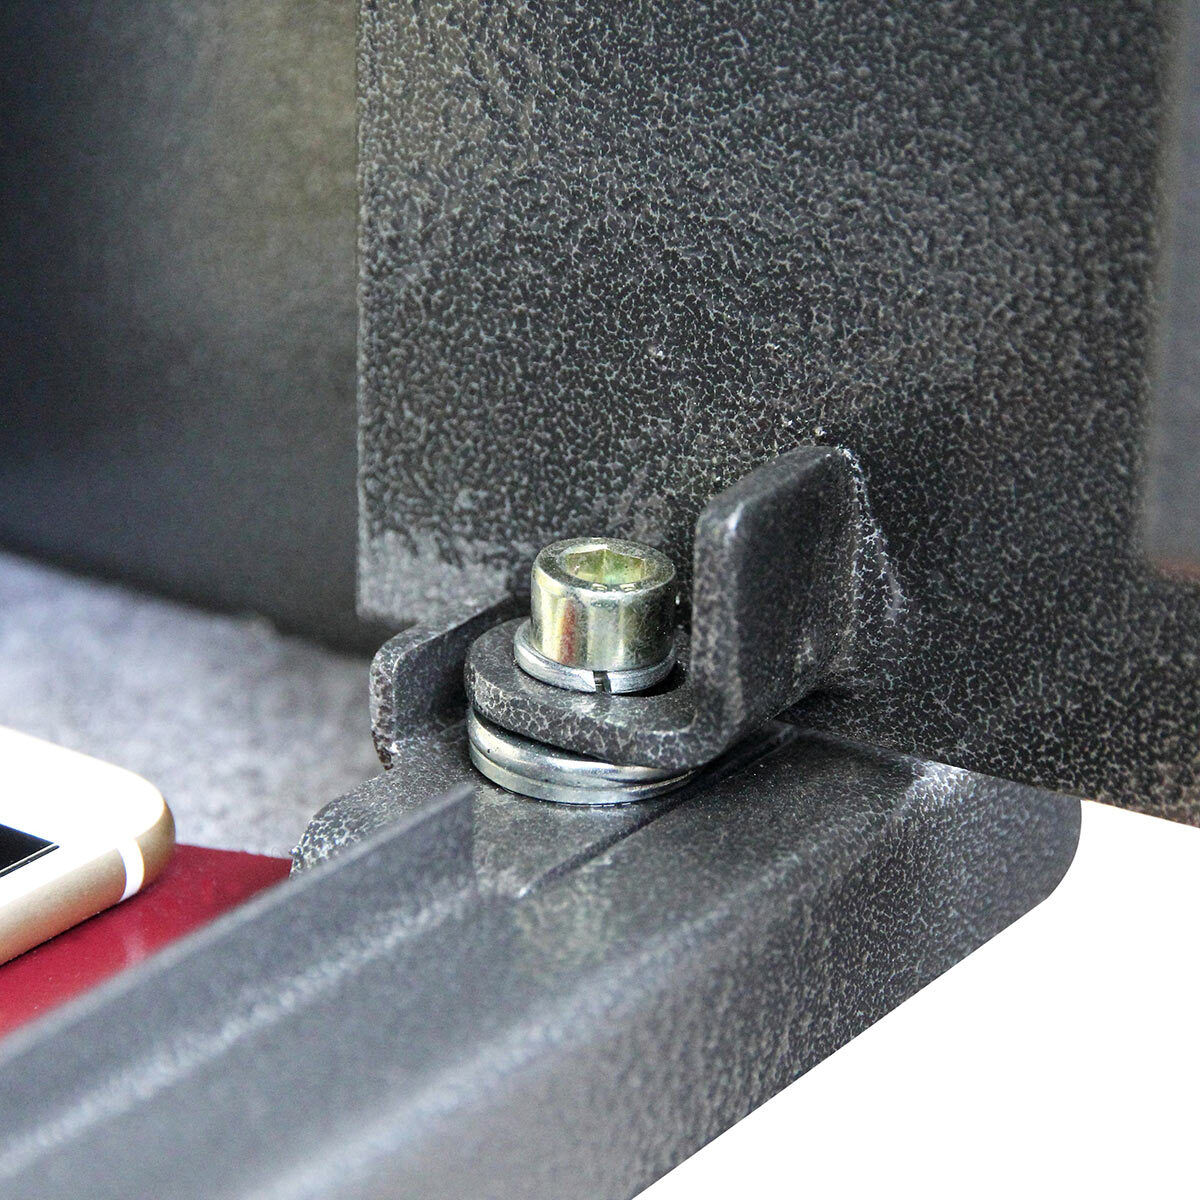 Close up image of safe hinge